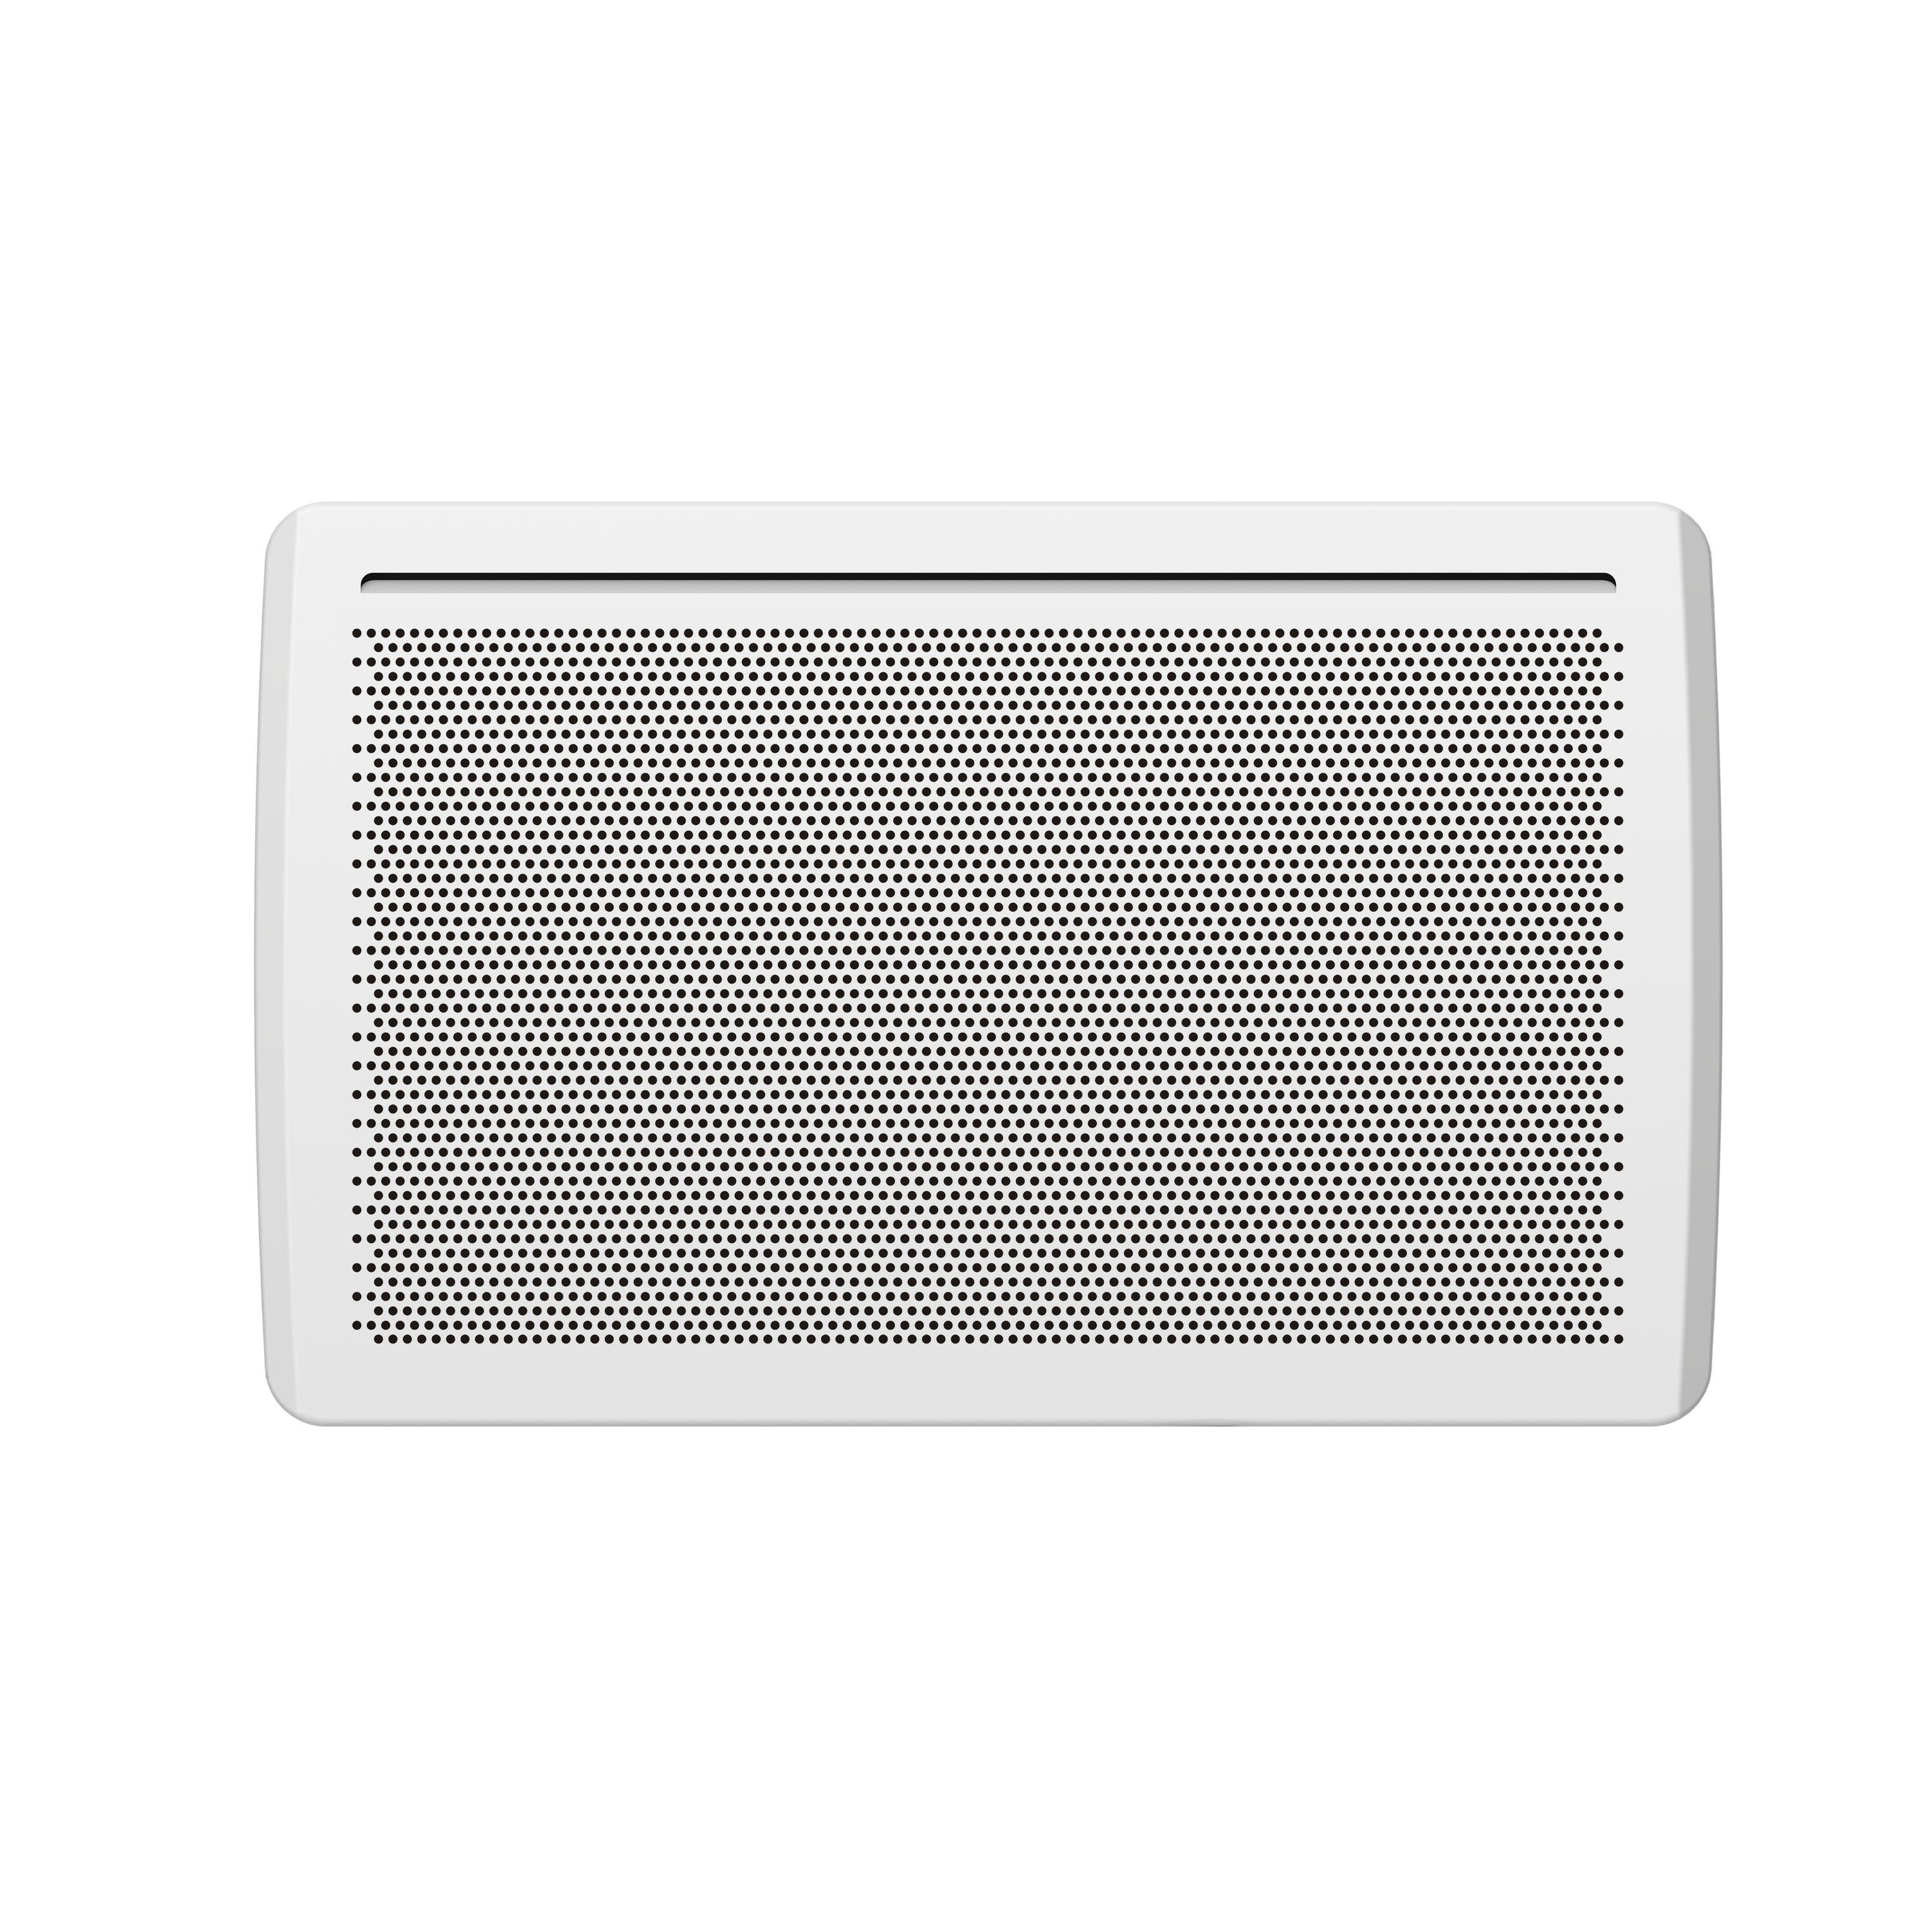 Radiateur électrique fixe 2000W - Panneaux rayonnants - Écran LCD -  Thermostat programmable - Blanc - Voltman